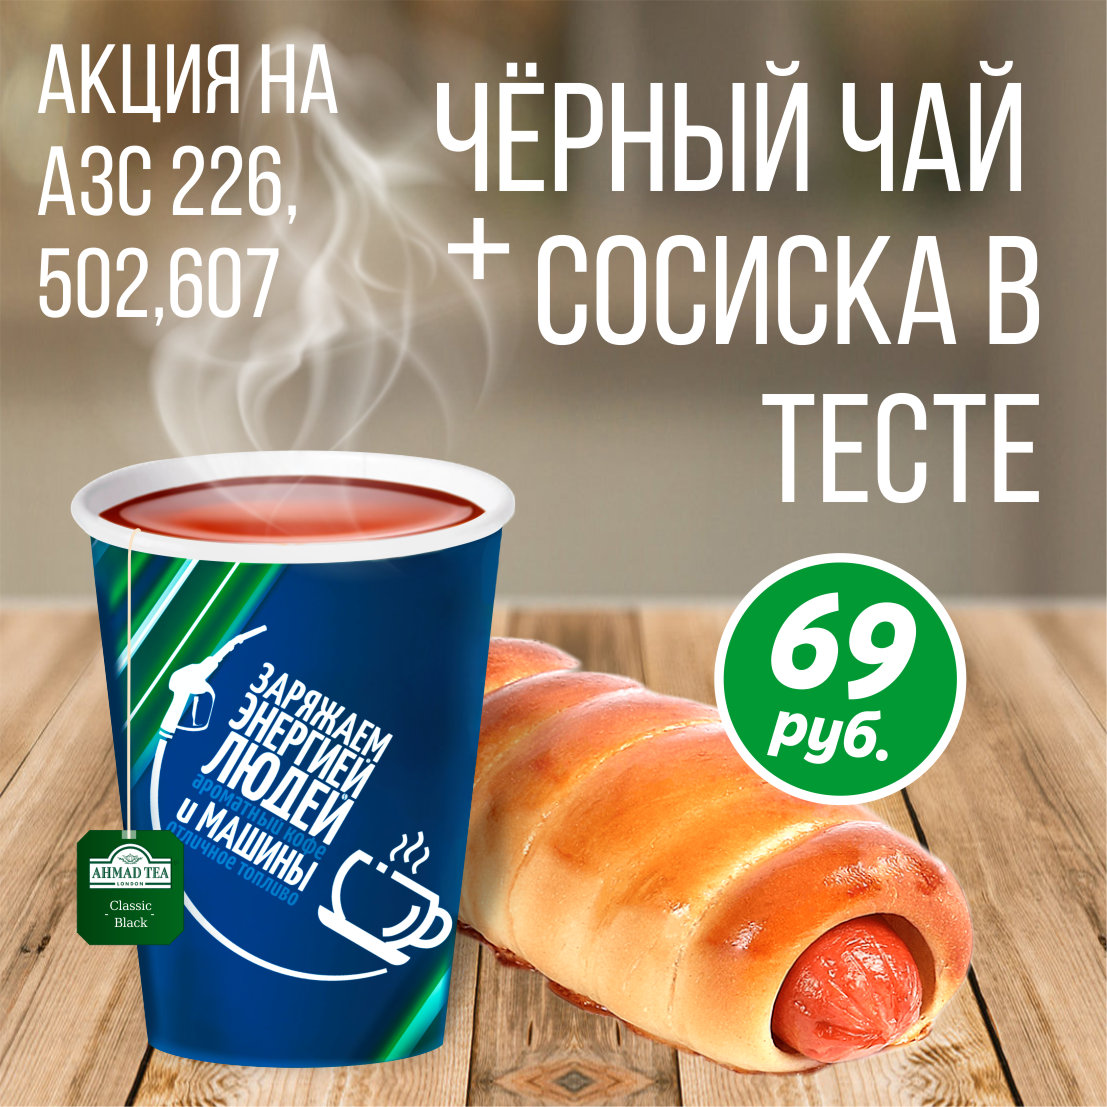 КОМБО-НАБОР "Чай + Сосиска в тесте" за 69Р